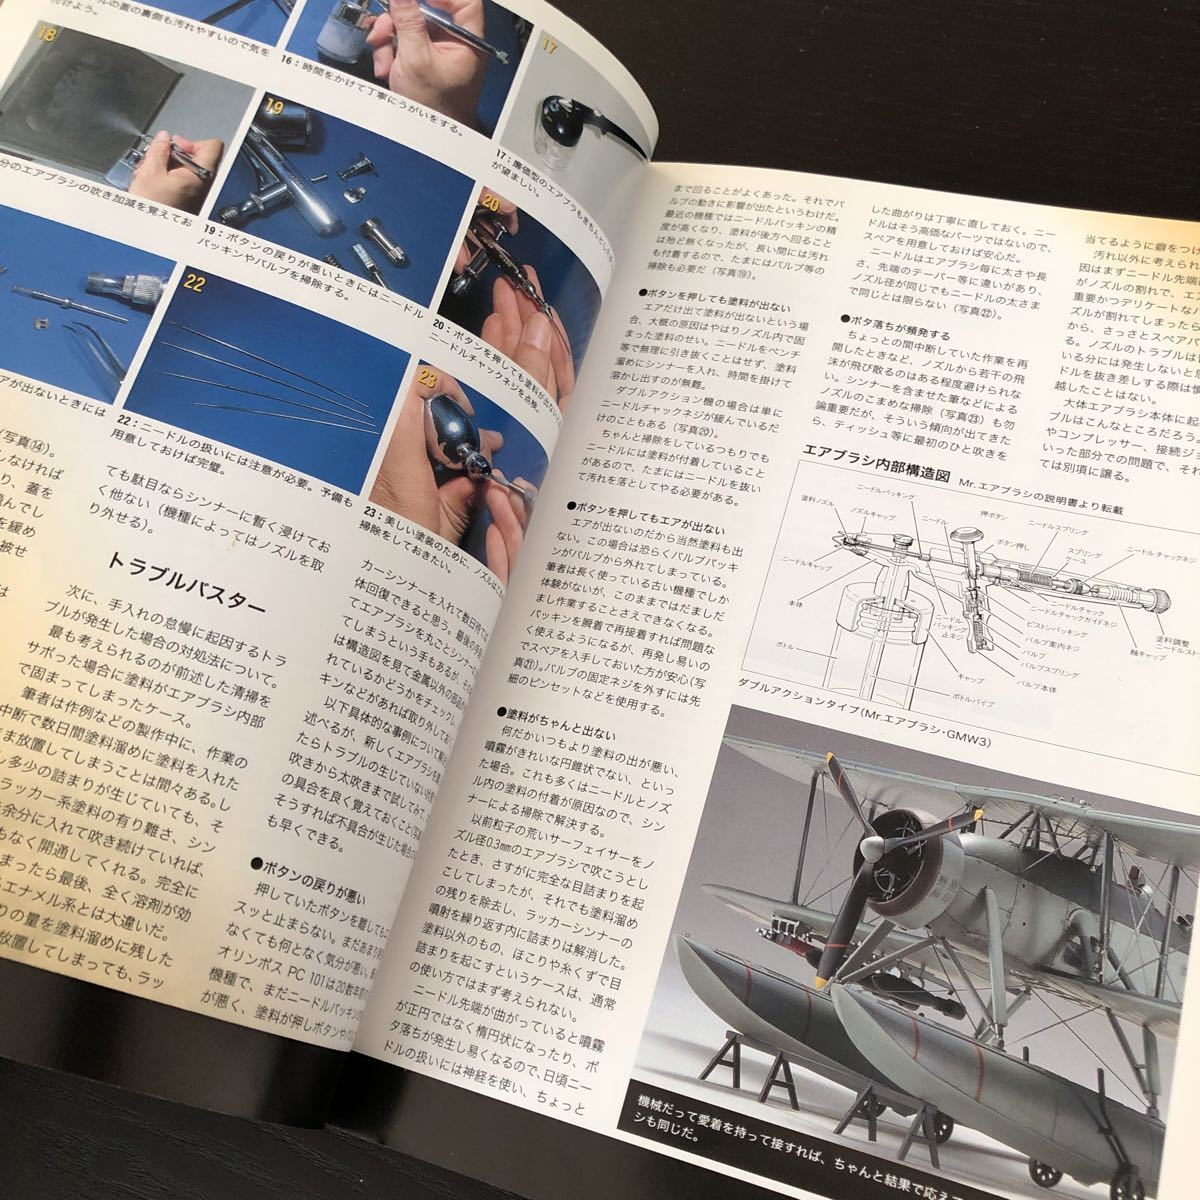 ア77 エアブラシ徹底理解2 AIRBRUSHING 日本海軍 海上自衛隊 作り方 世界の艦船 航空 手作り 作り方 戦艦 母艦 レンジキット 飛行機モデル_画像8